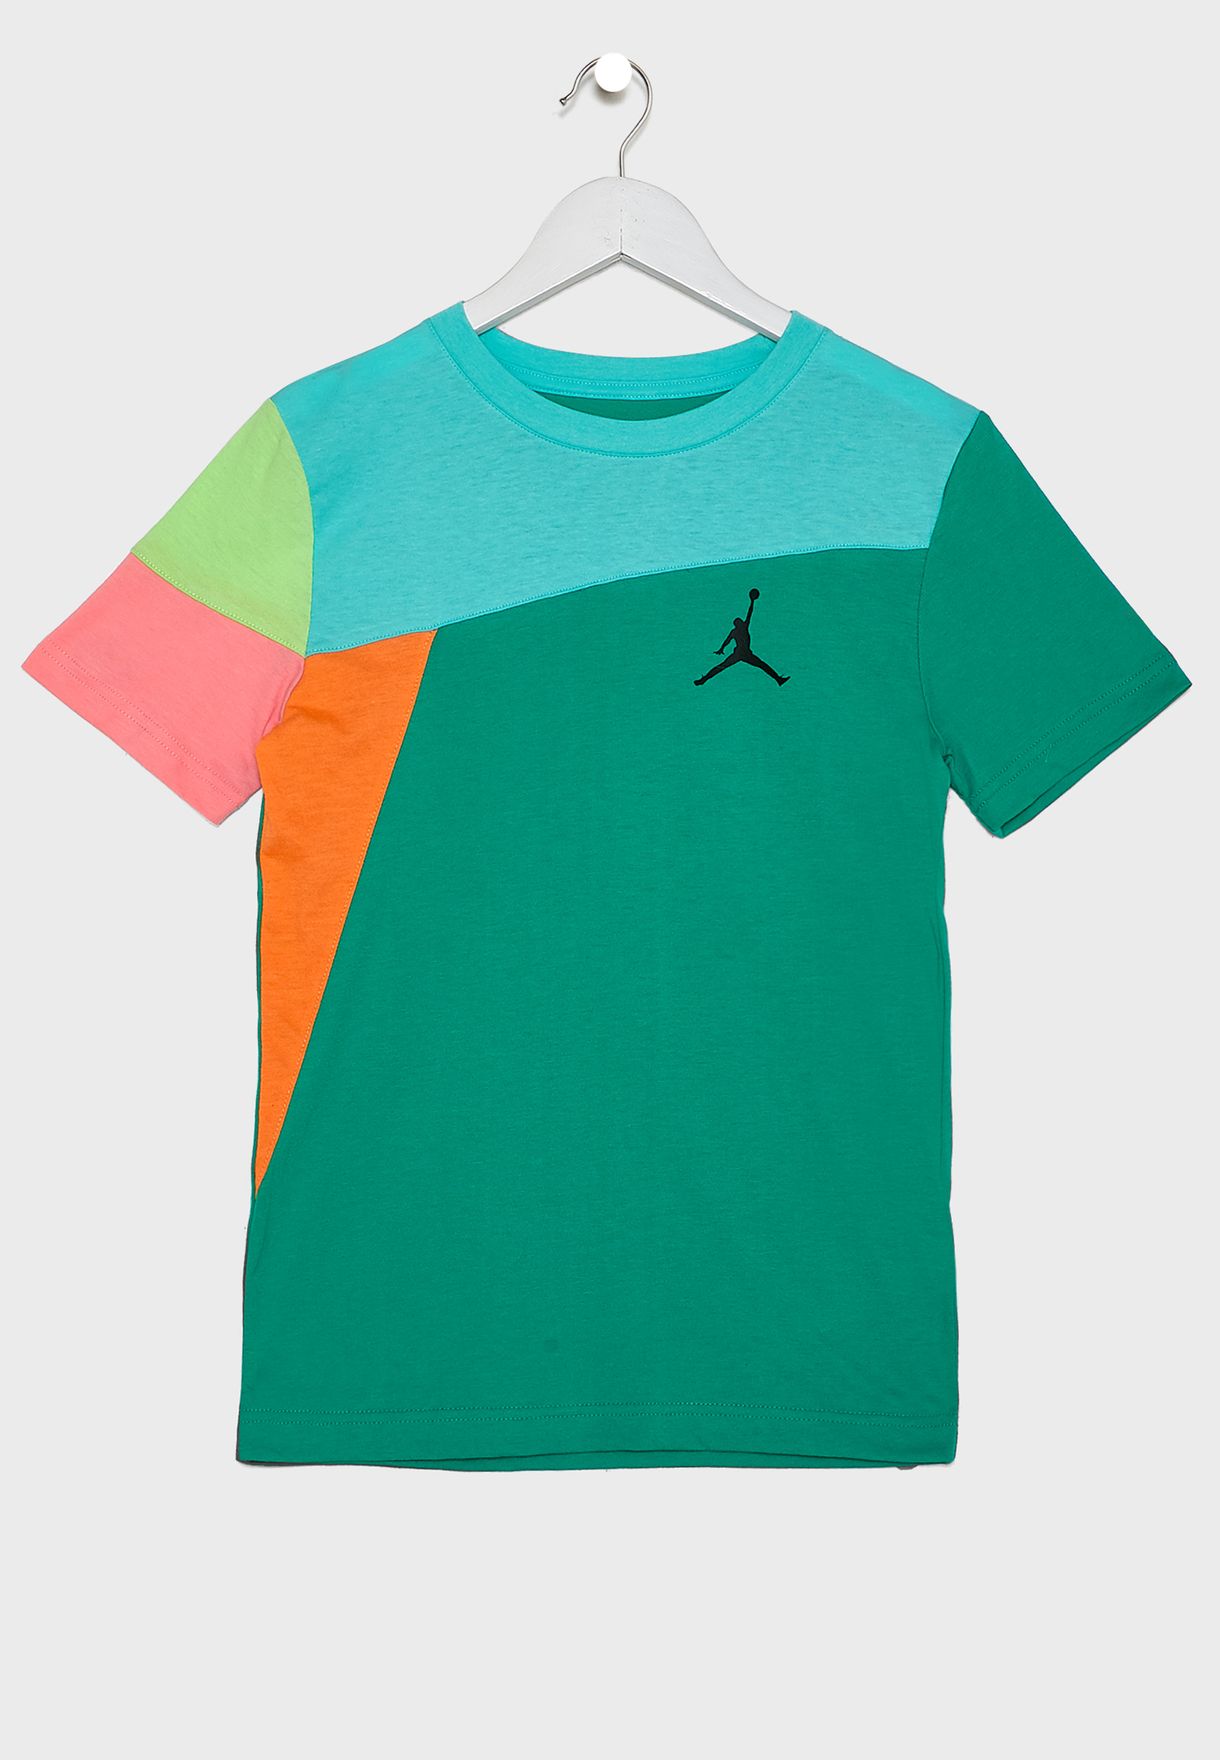 colorful jordans shirt